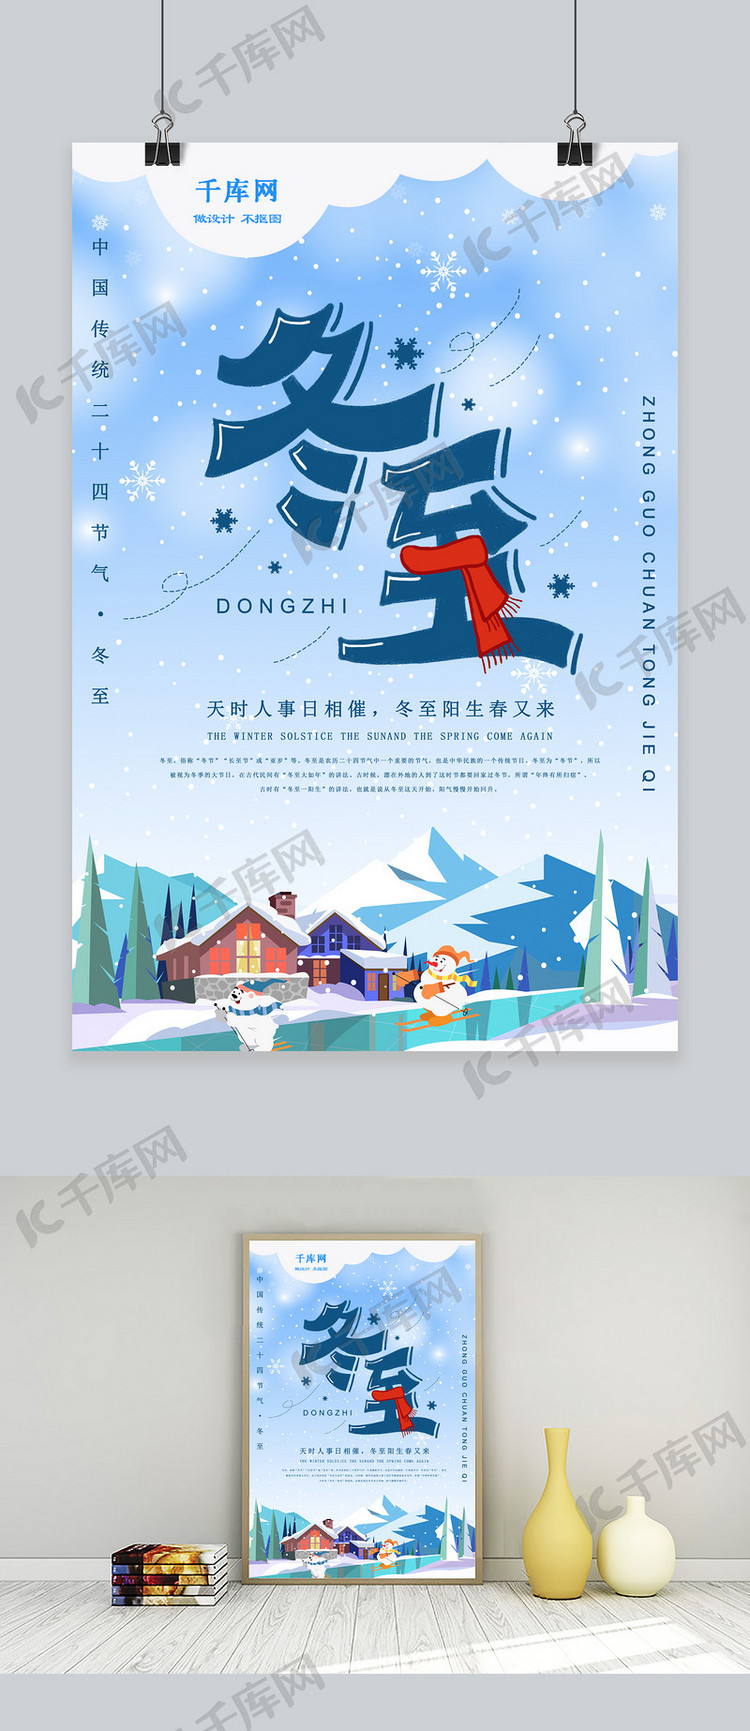 中国传统节日冬至海报